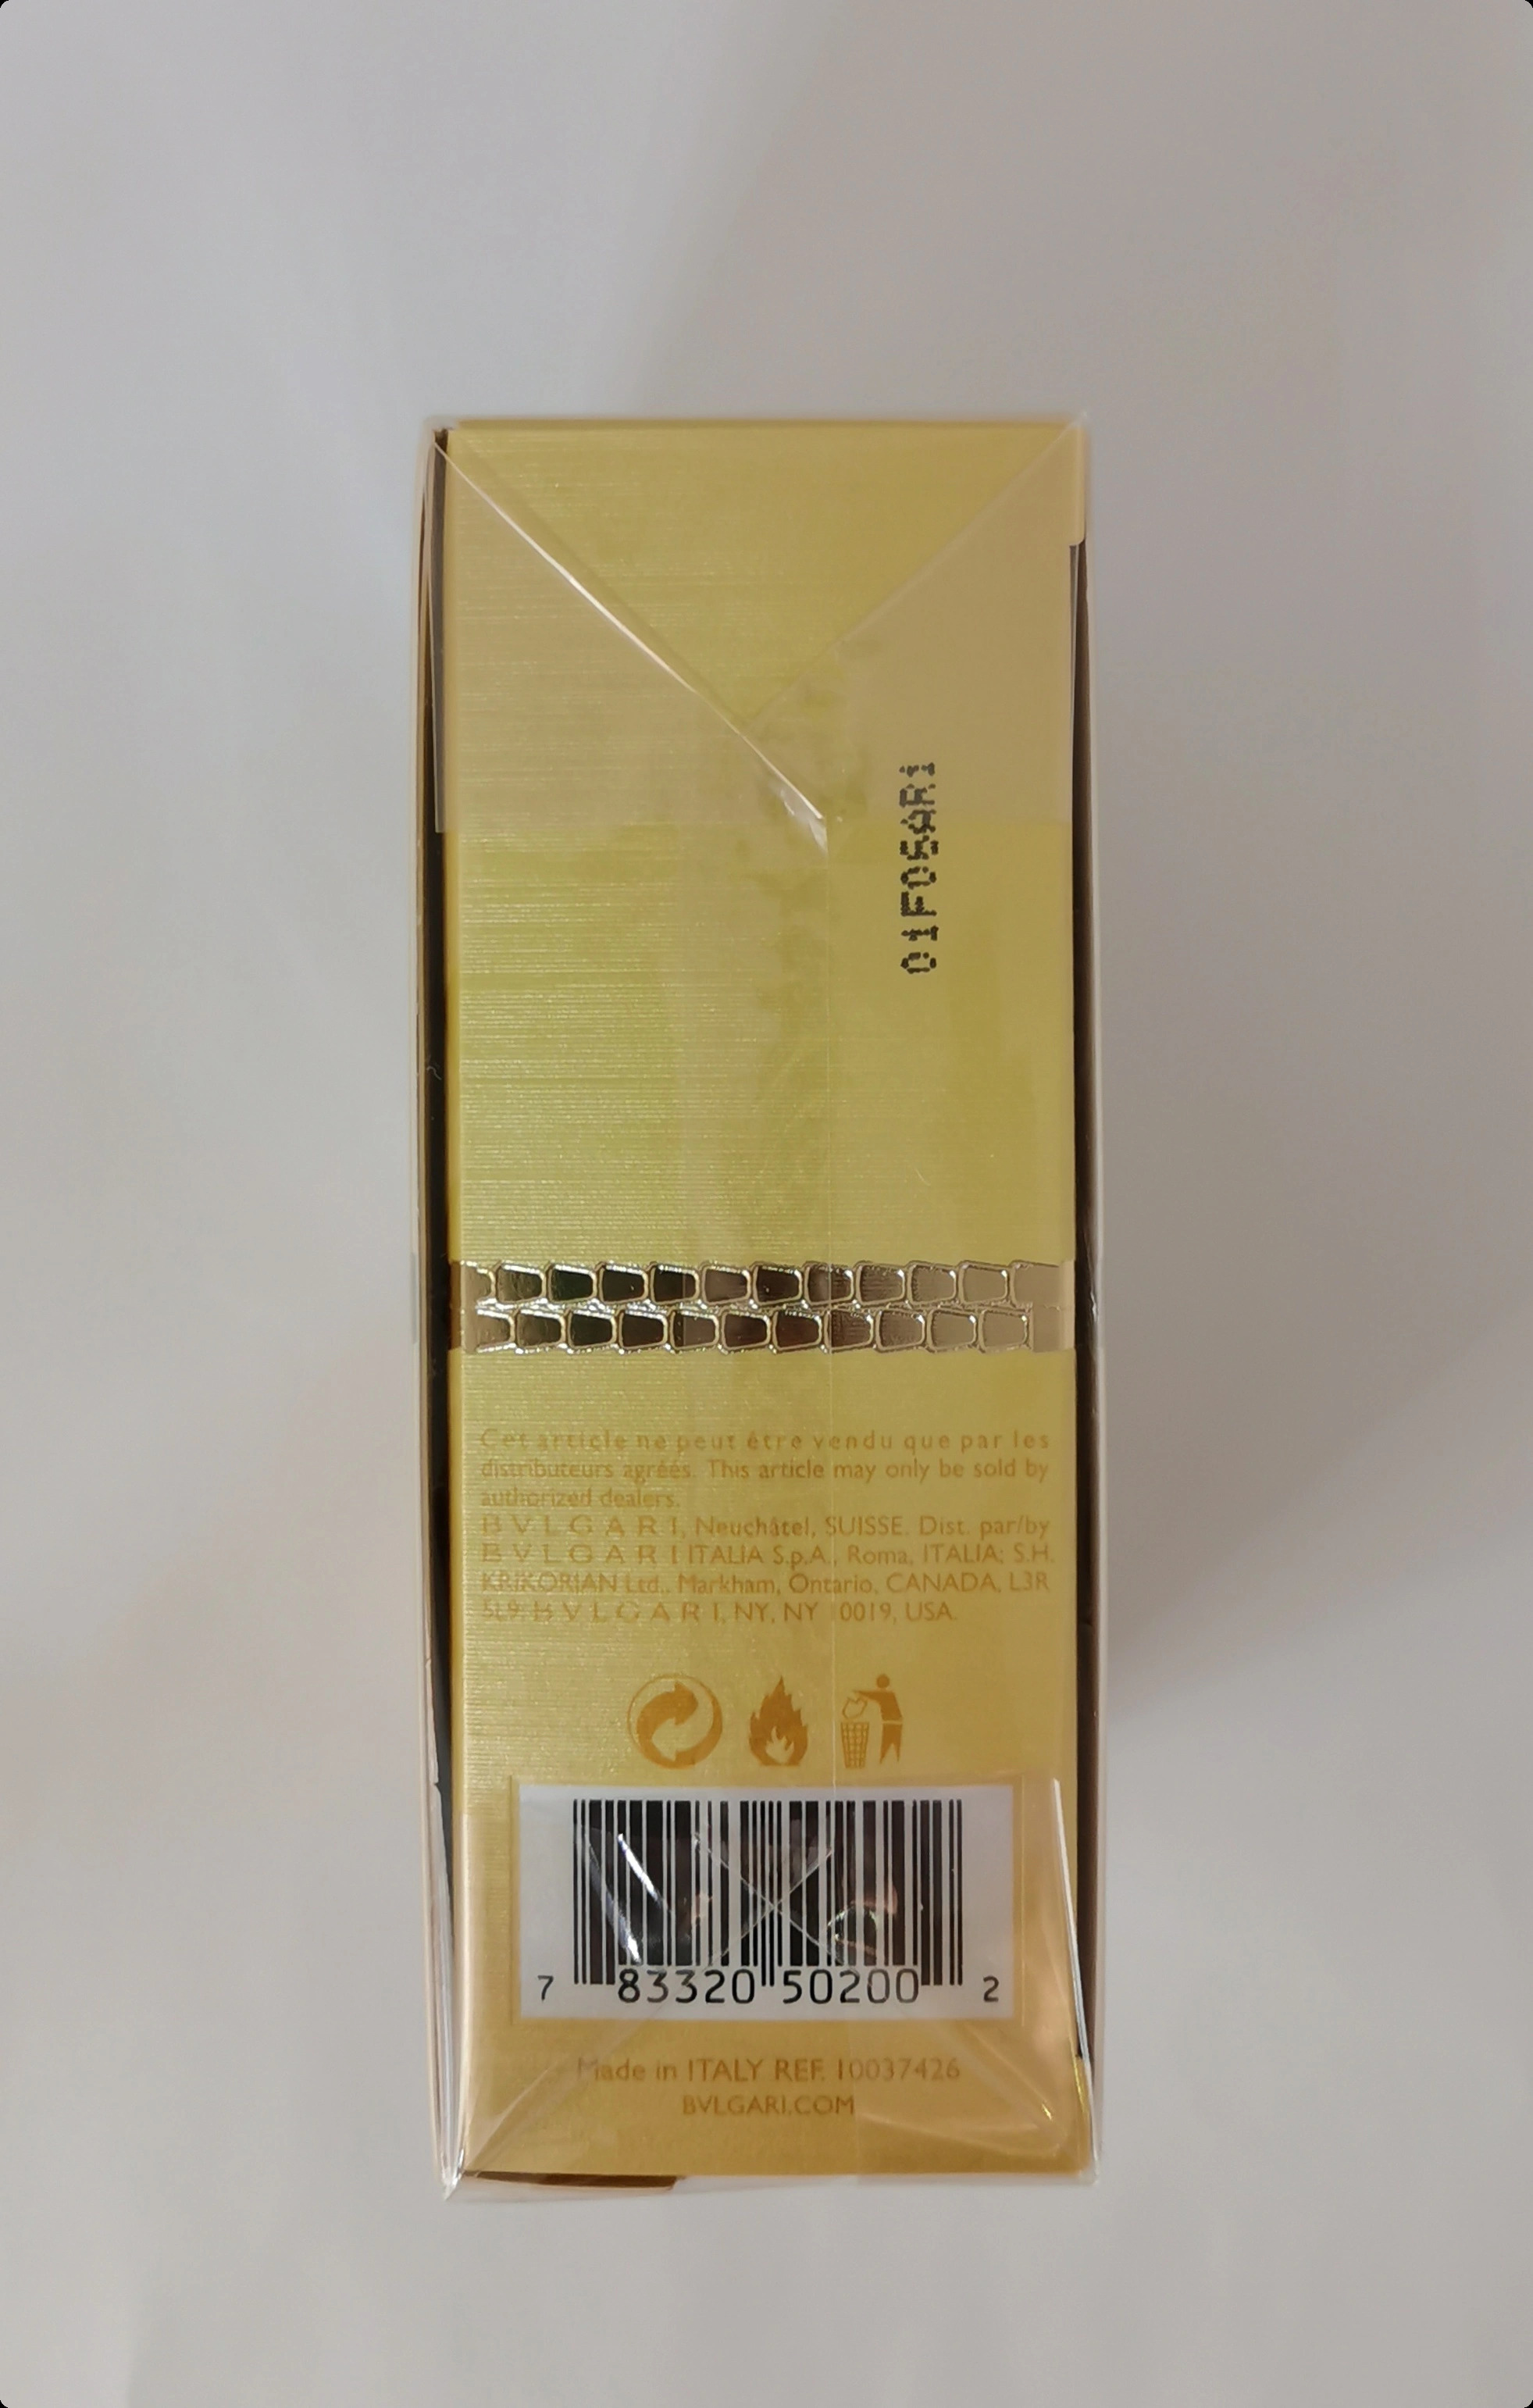 Парфюмерная вода 25&nbsp;мл - фото штрих-кода и батч-кода на коробке